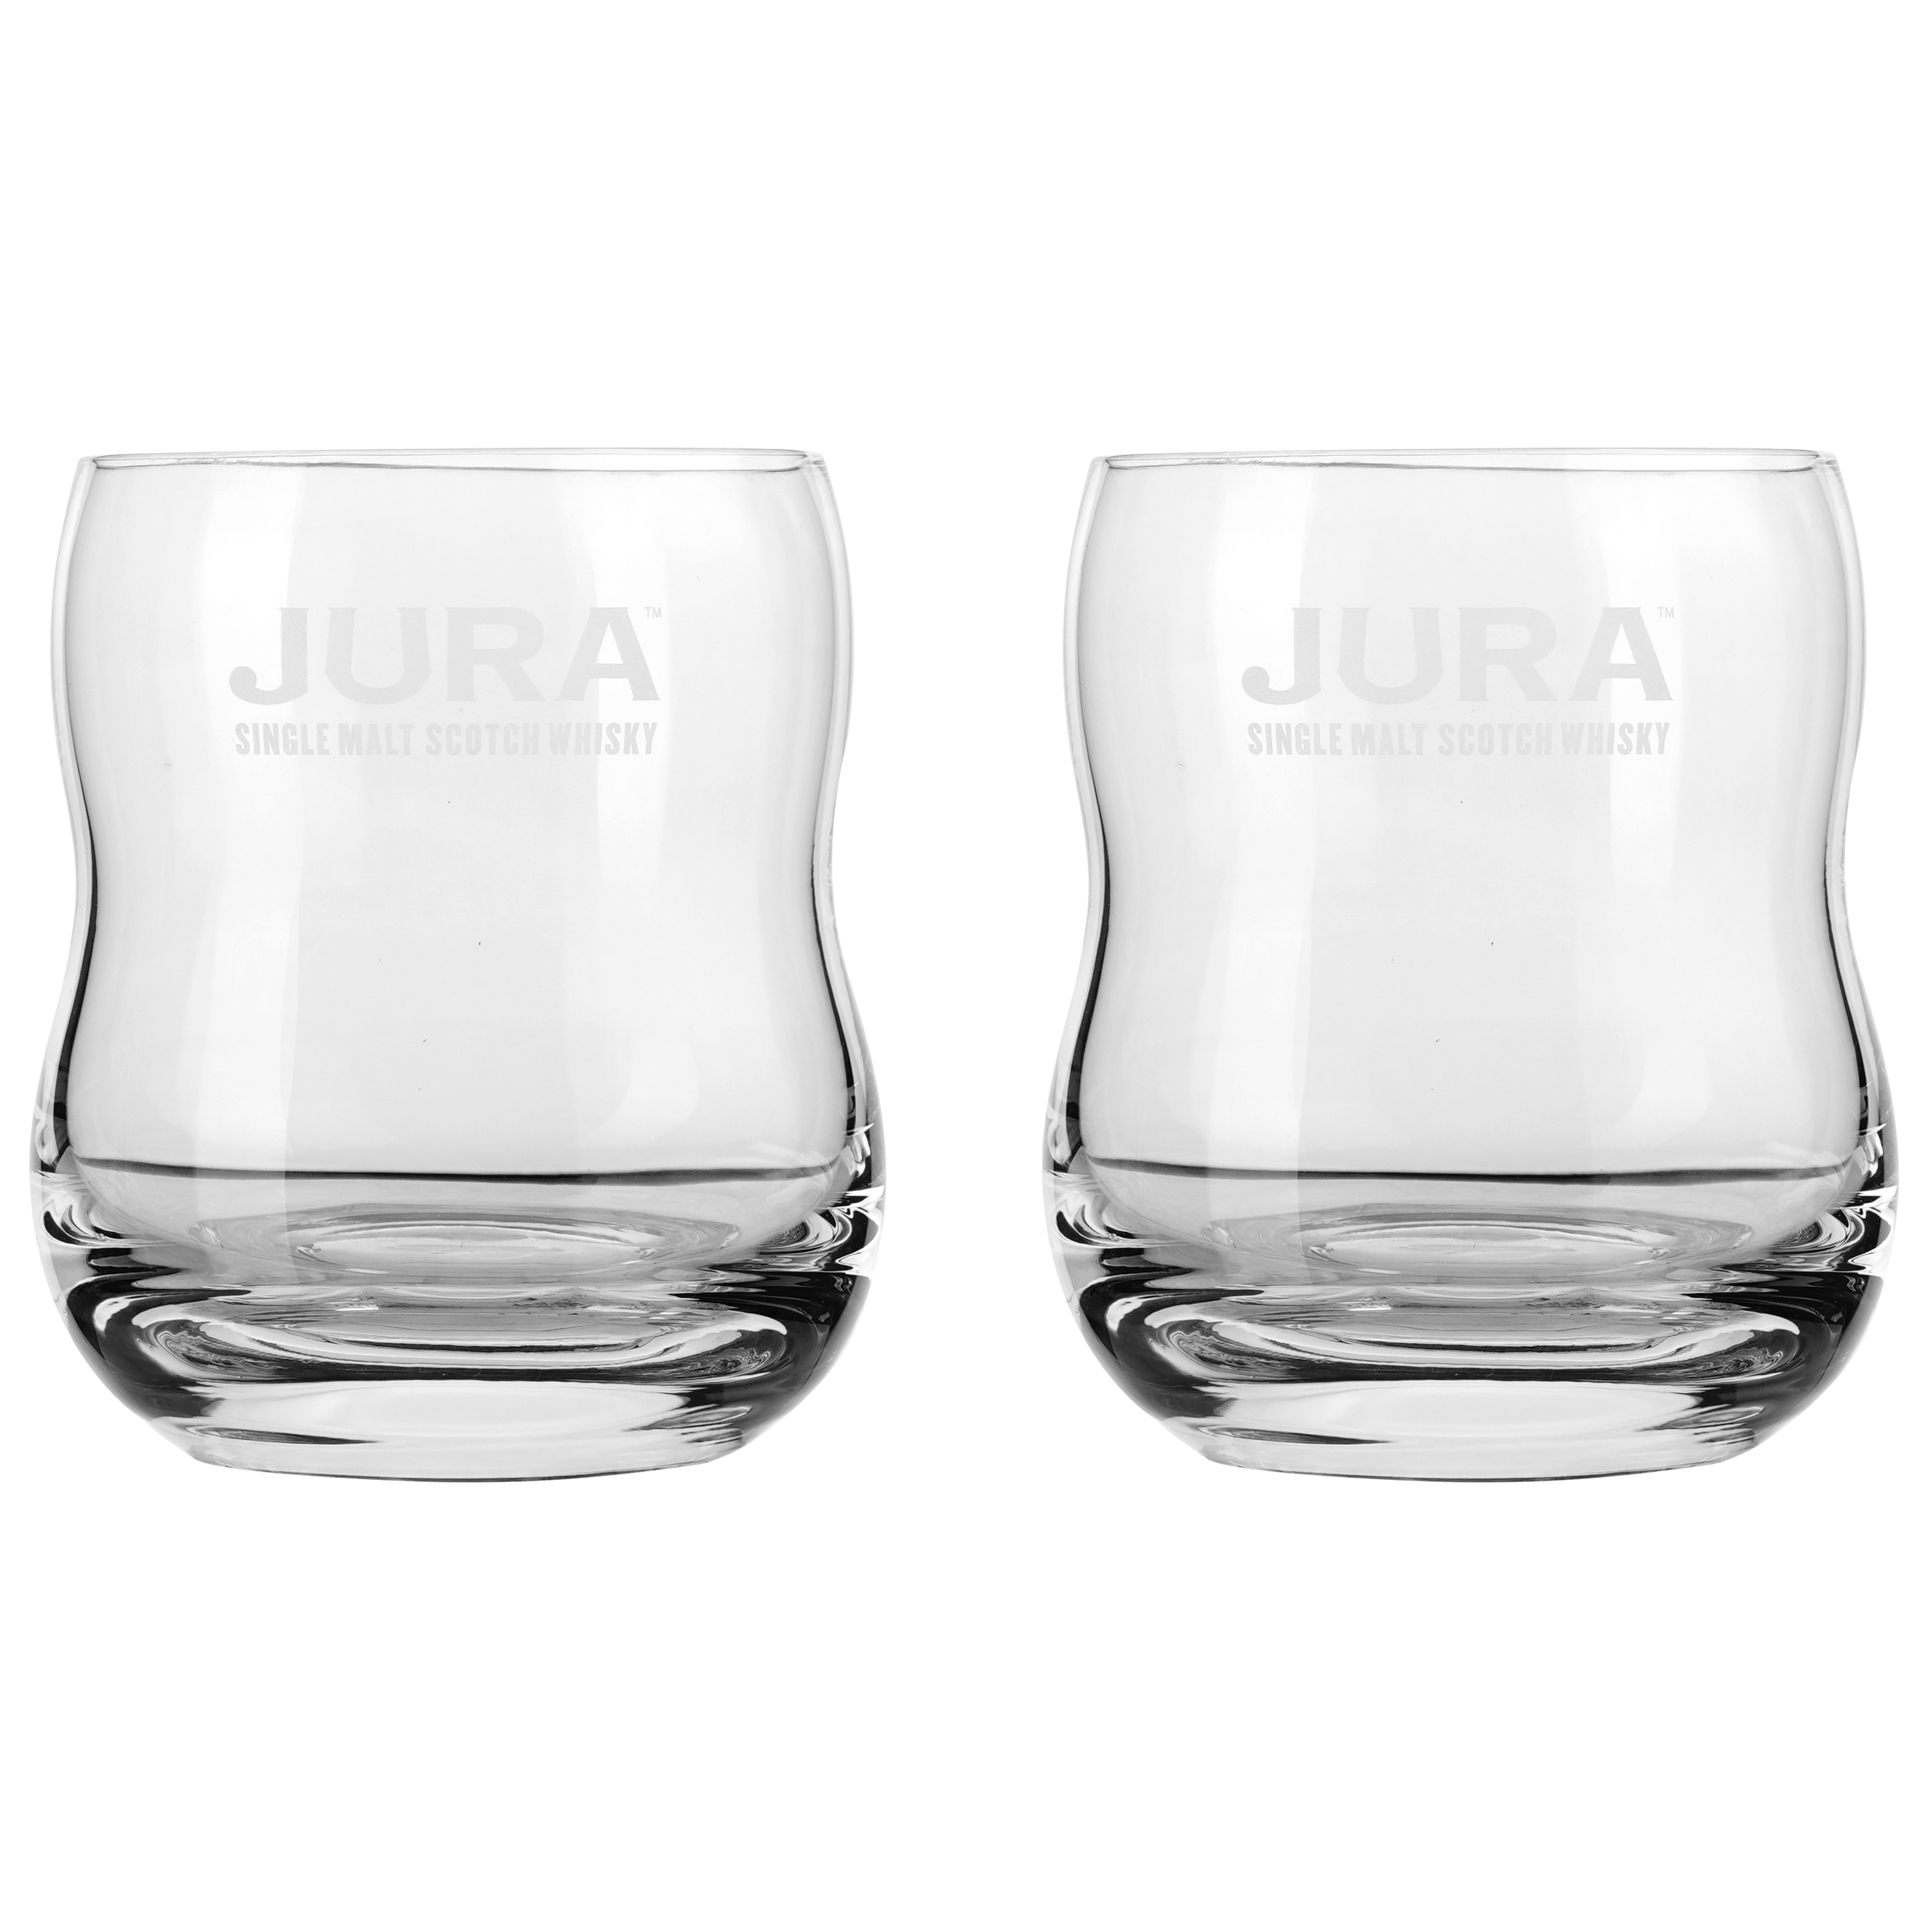 Віскі Isle of Jura 10 yo Single Malt Scotch Whisky, 40 %, 0,7 л + 2 келихи (50186) - фото 4